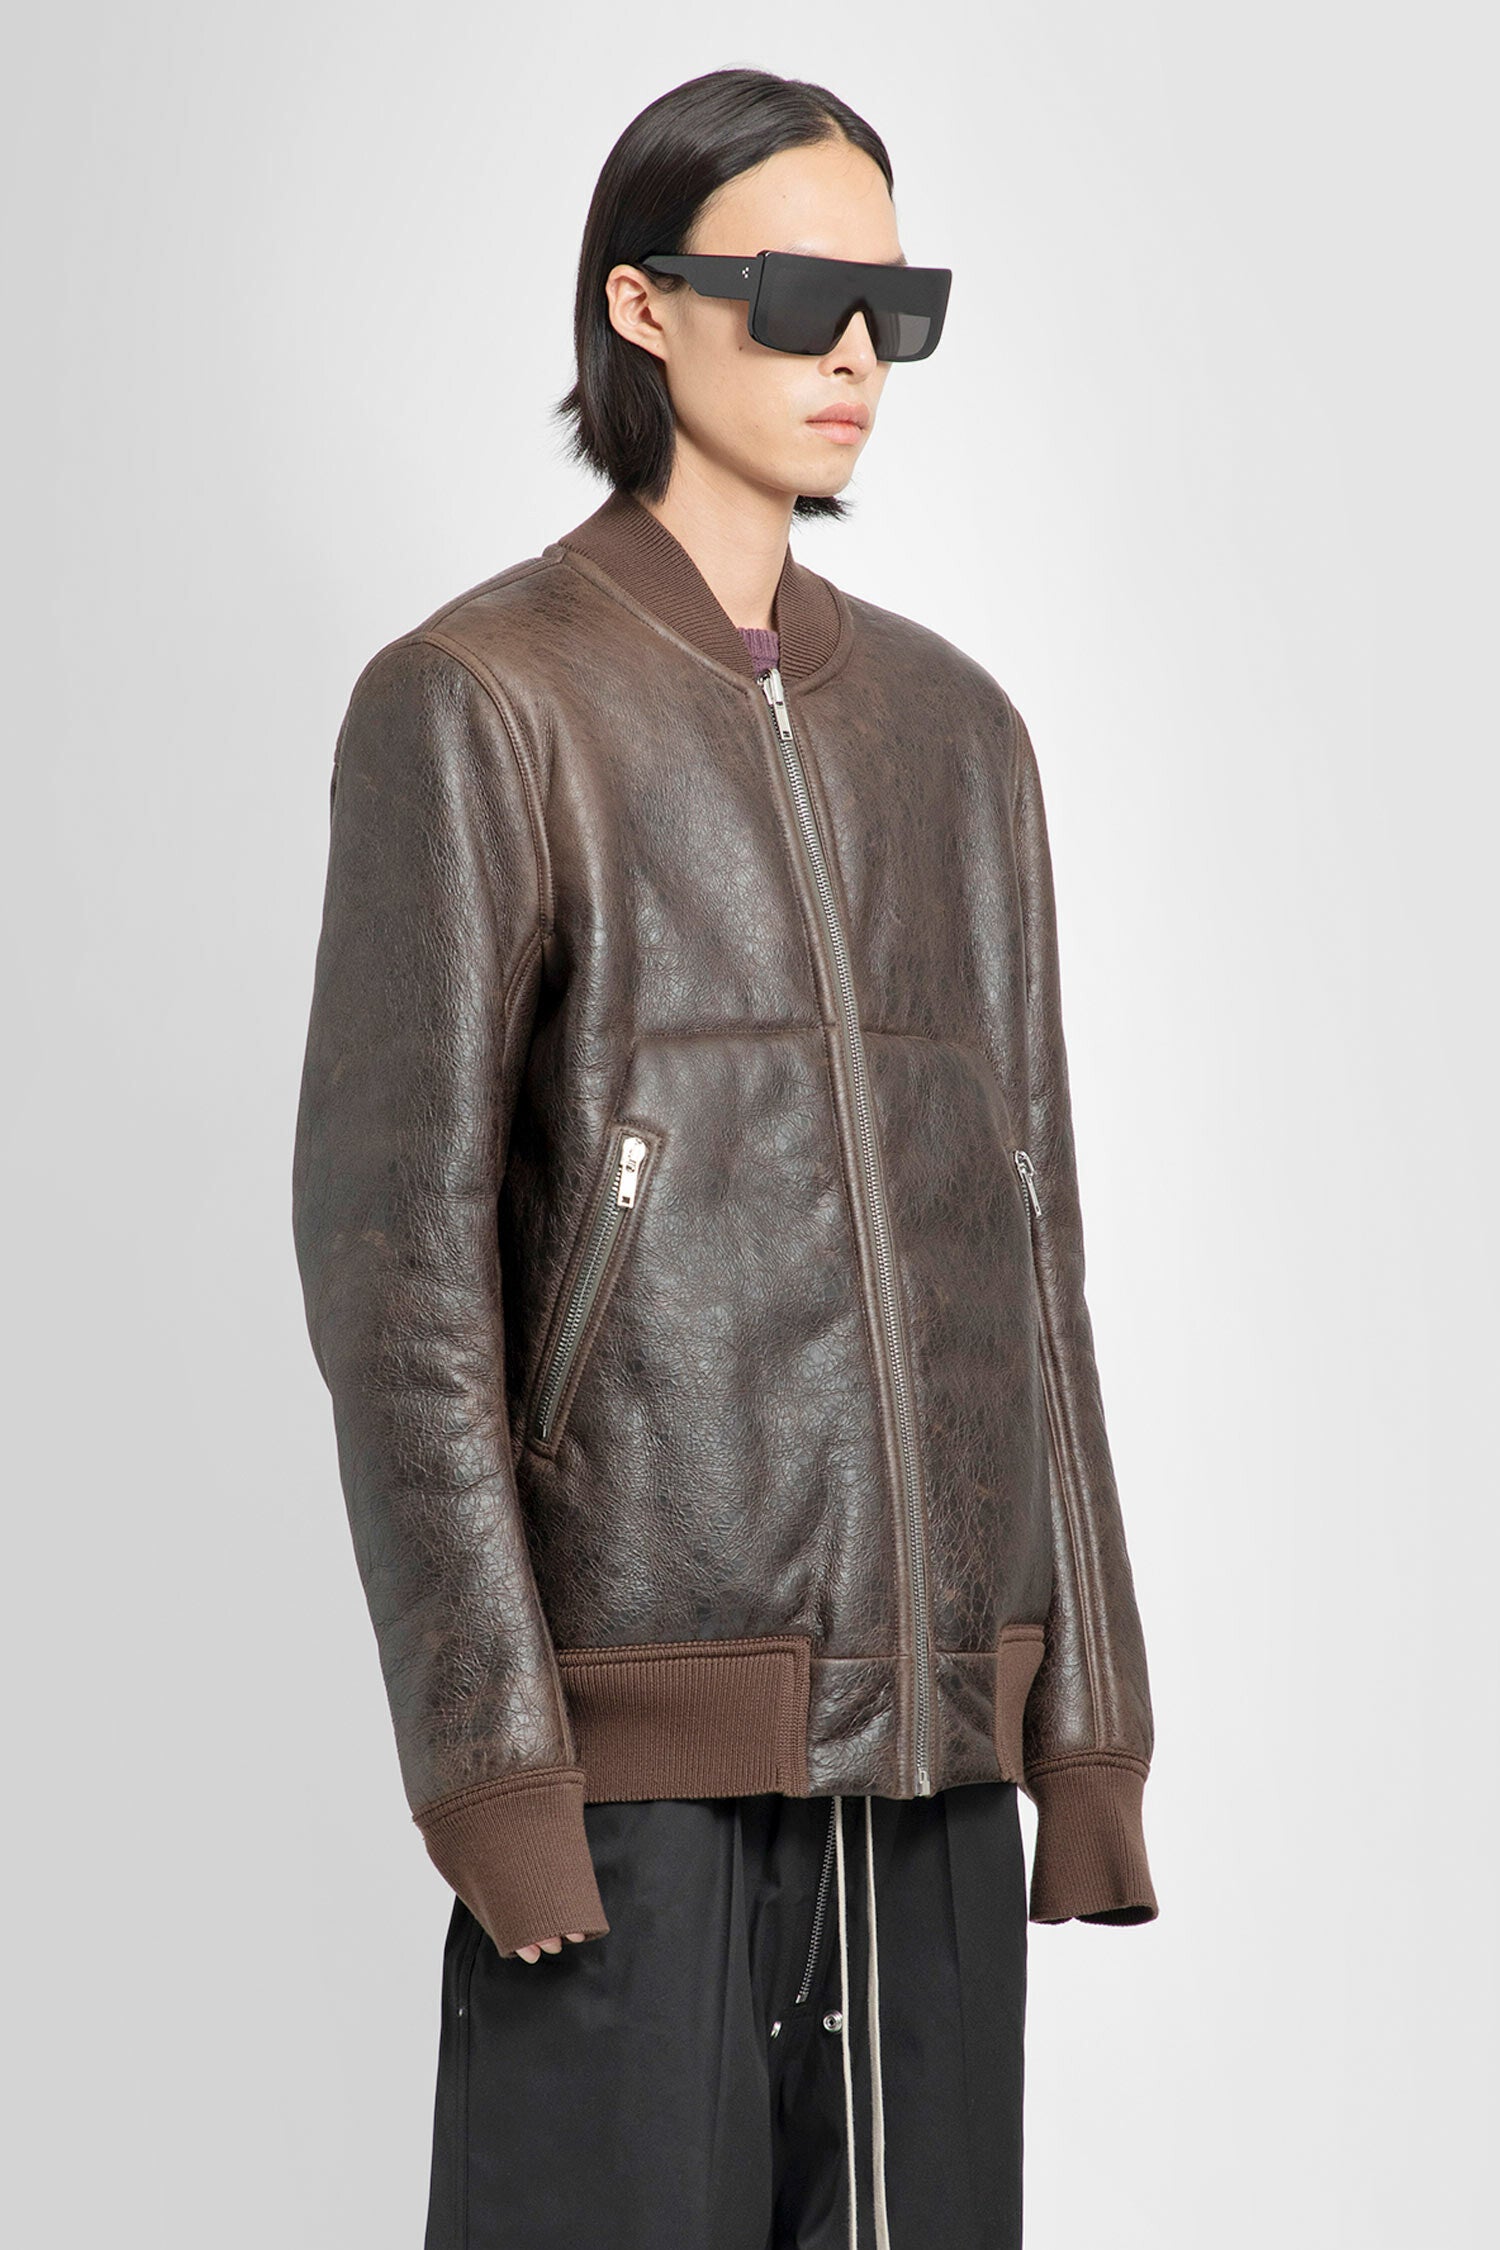 Rick Owens Leather Jacket2014AWのものになります